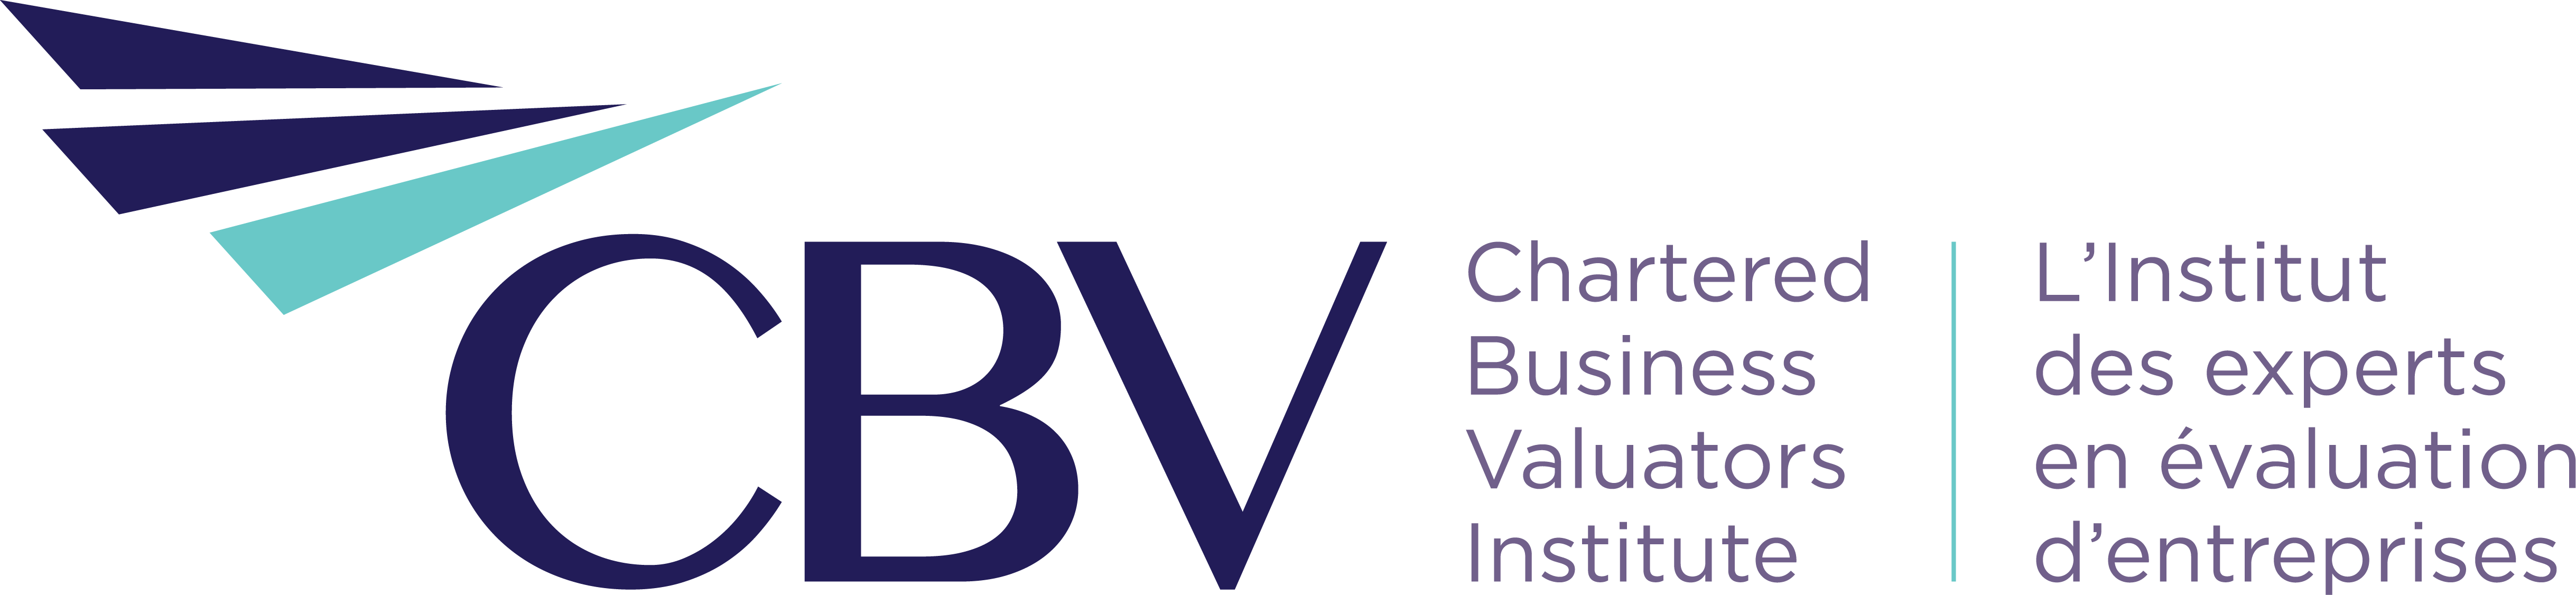 Logo-CBV-transparent.png